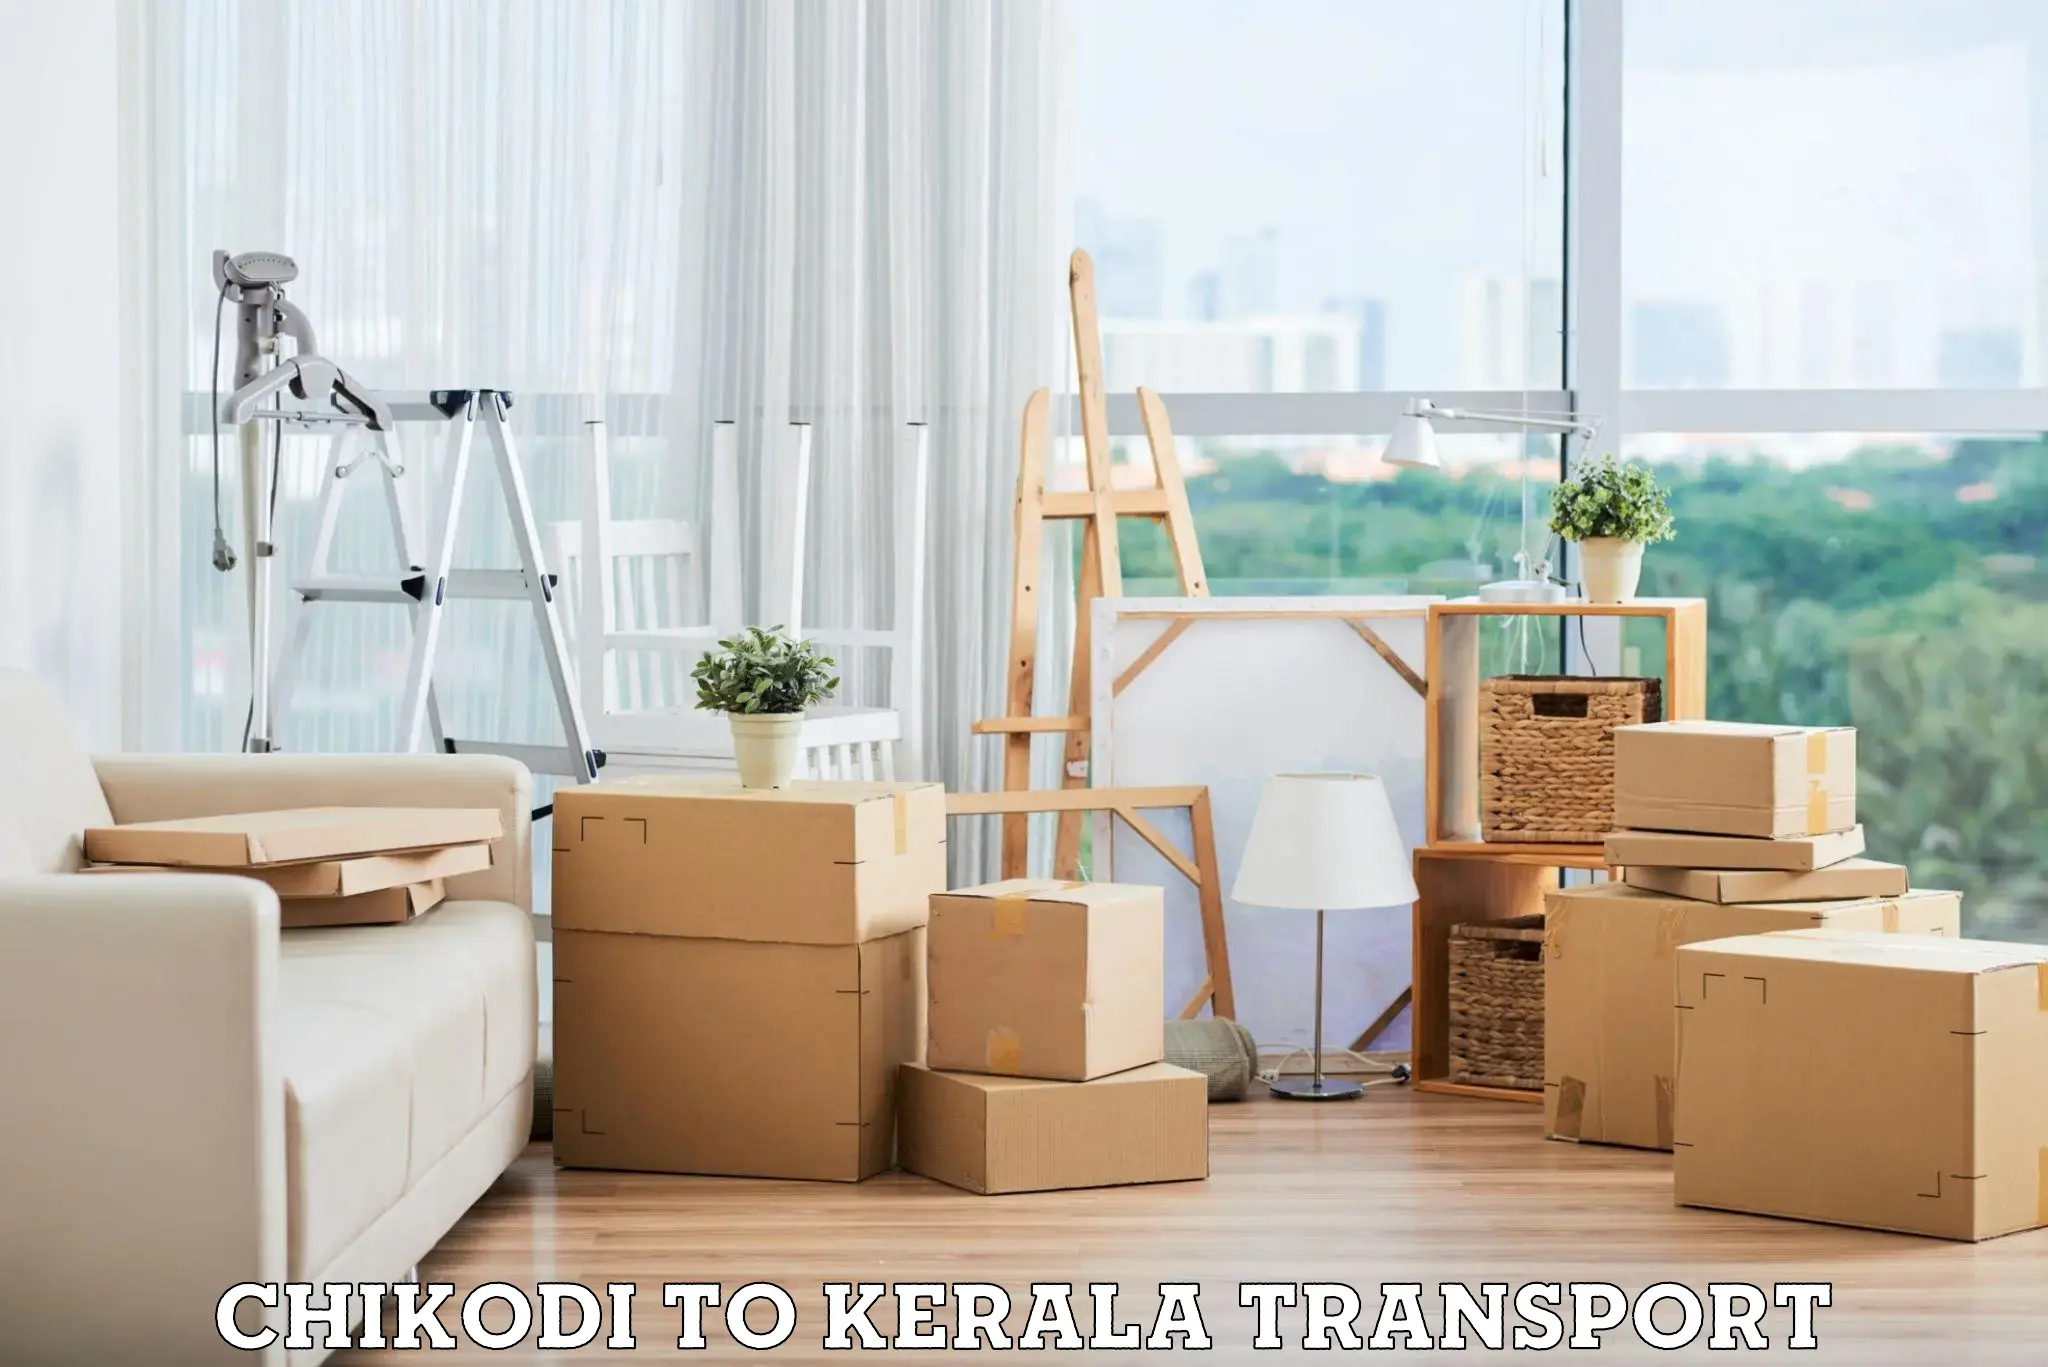 Cargo transportation services Chikodi to Panthalam